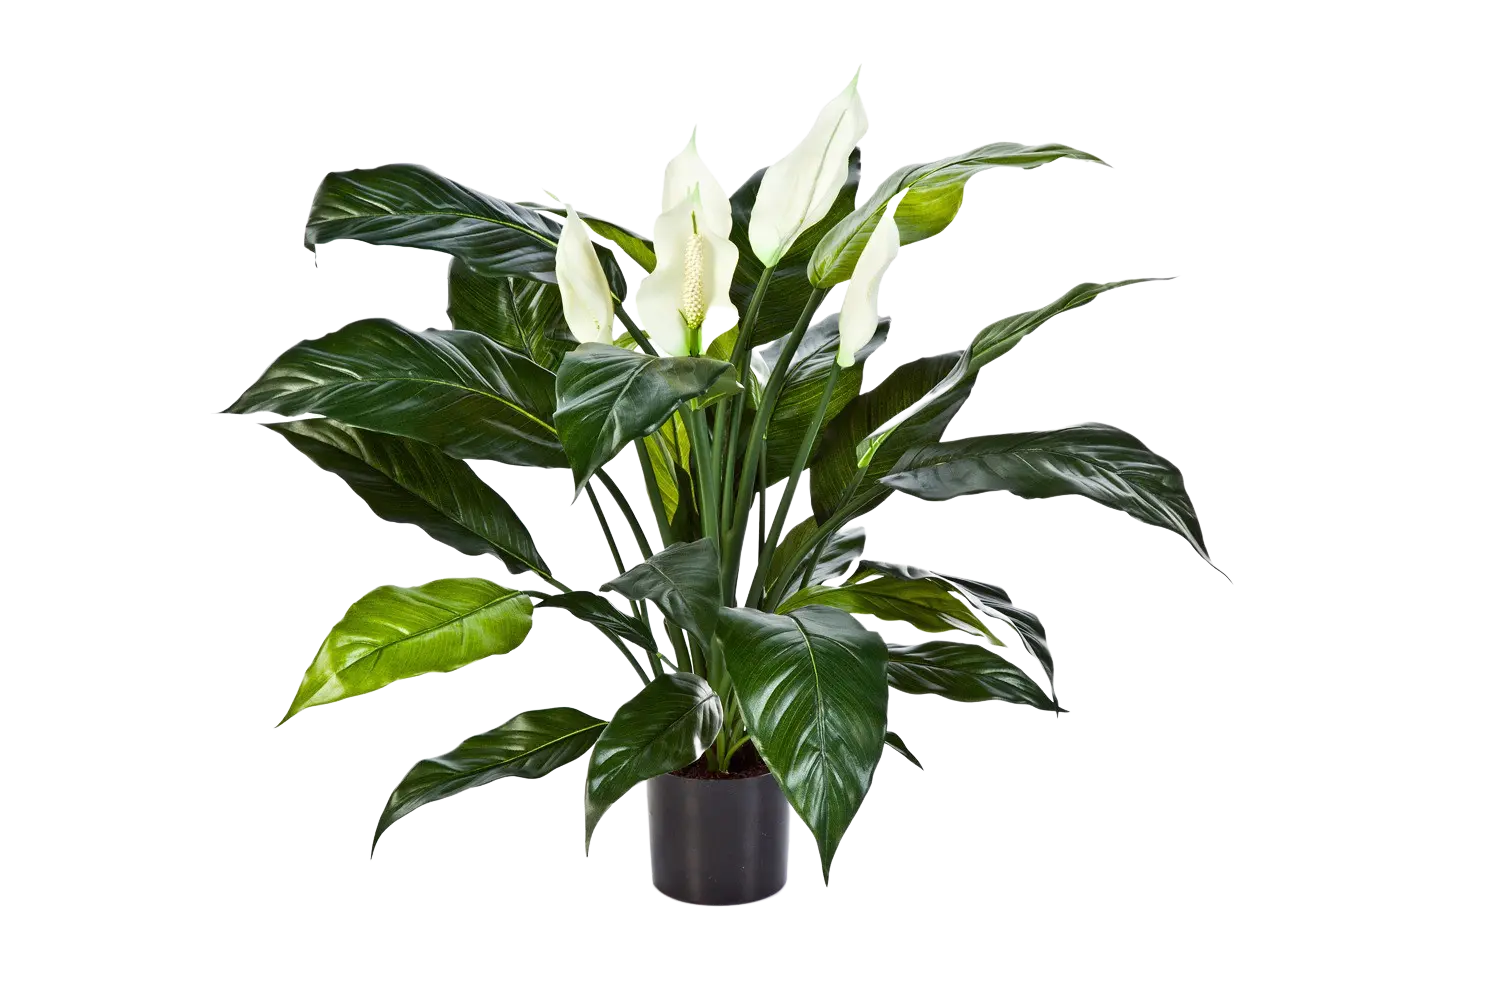 Künstliche Spathiphyllum - Big-Luna auf transparentem Hintergrund mit echt wirkenden Kunstblättern. Diese Kunstpflanze gehört zur Gattung/Familie der "Spathiphyllums" bzw. "Kunst-Spathiphyllums".